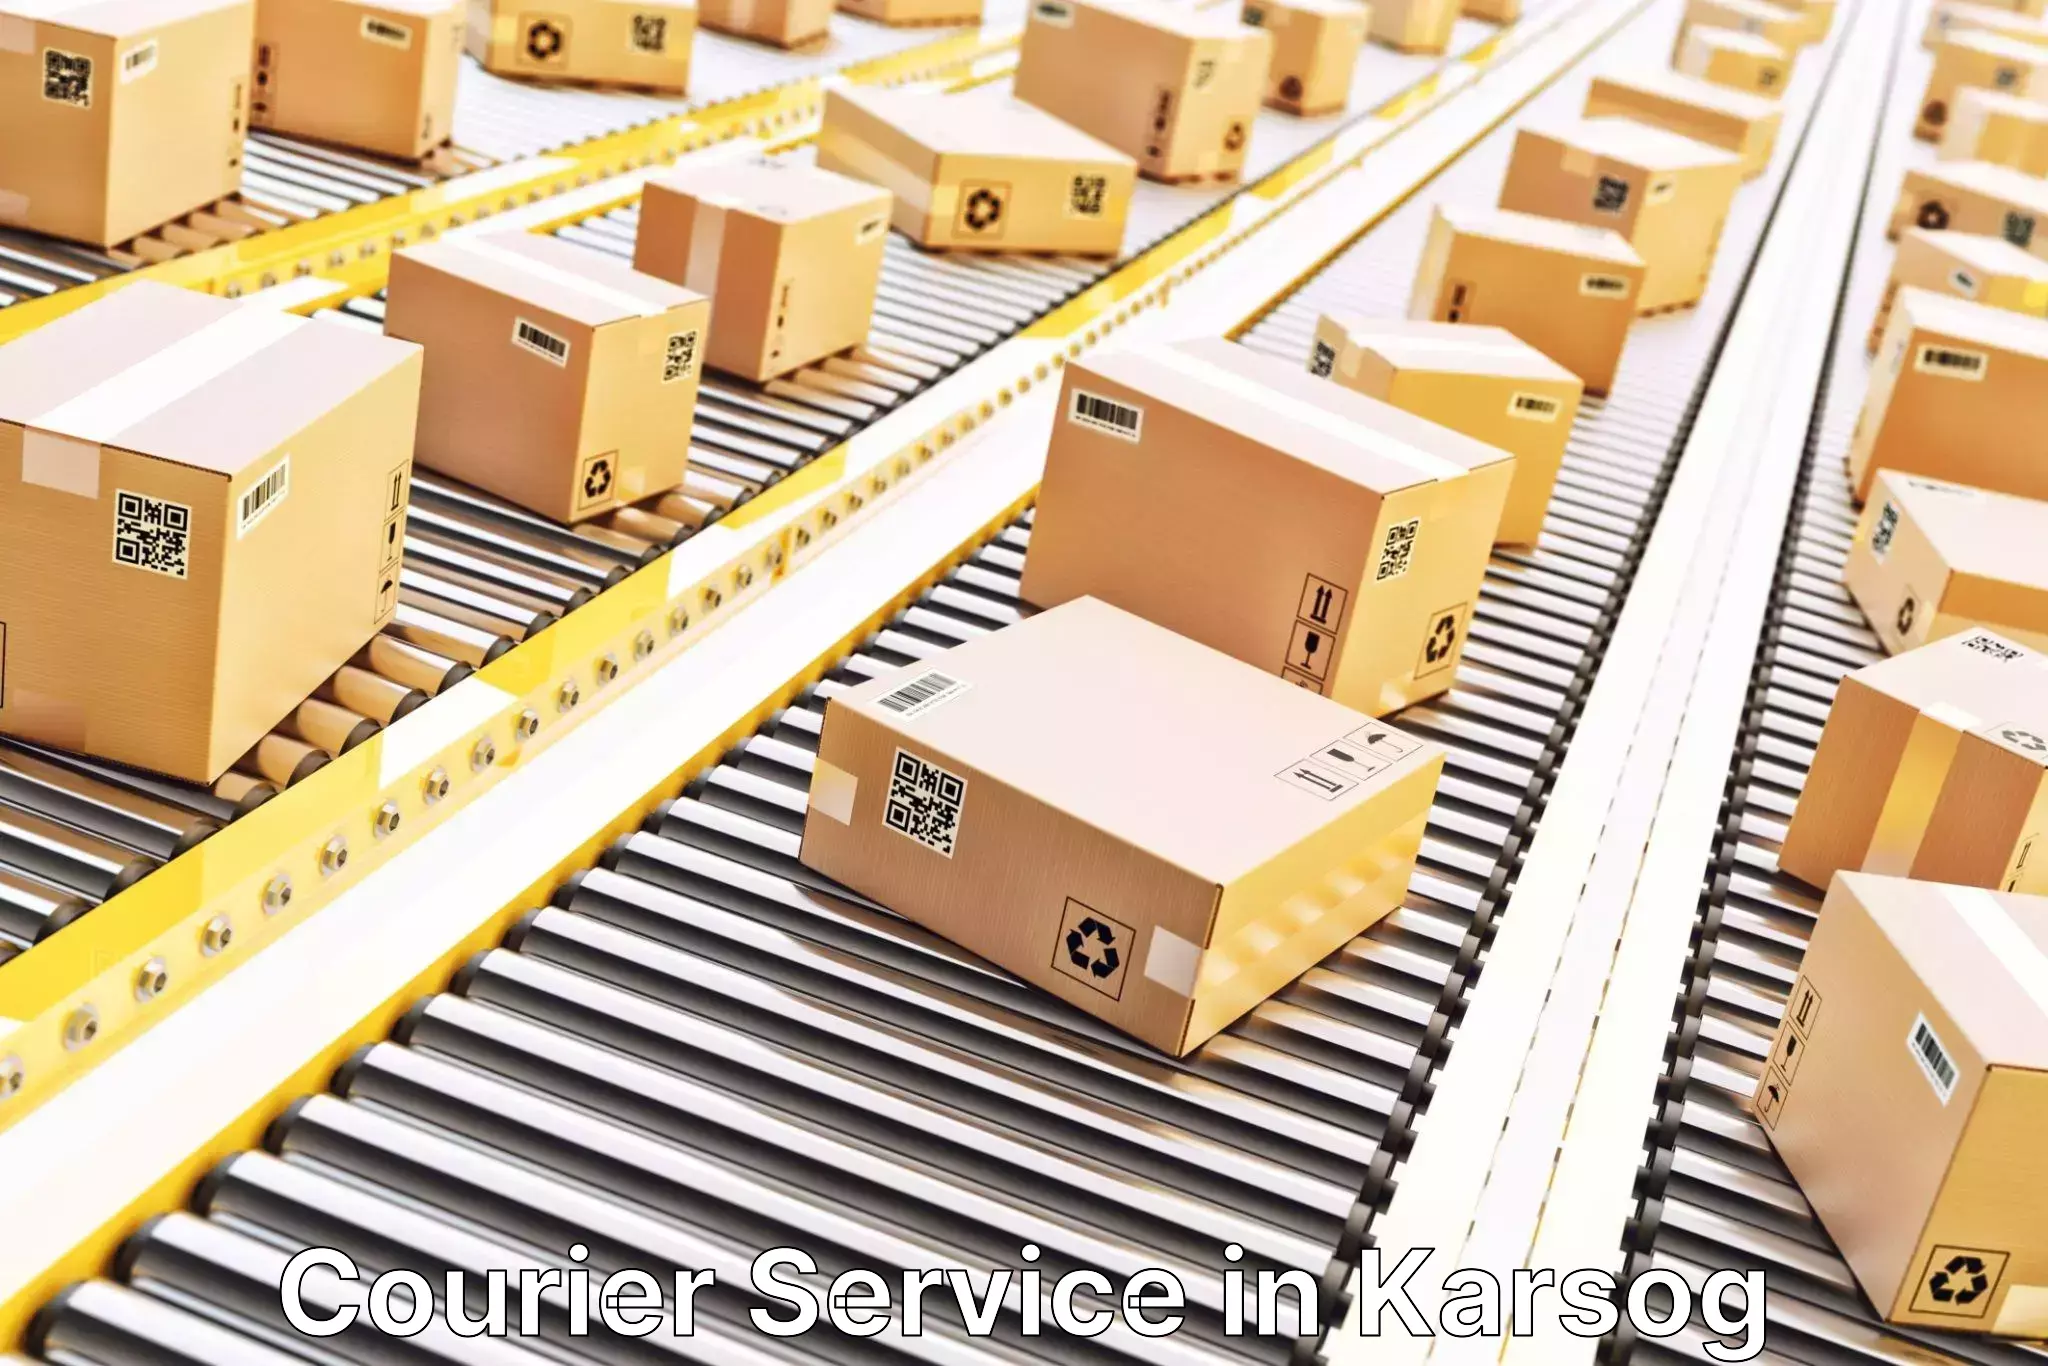 Advanced parcel tracking in Karsog